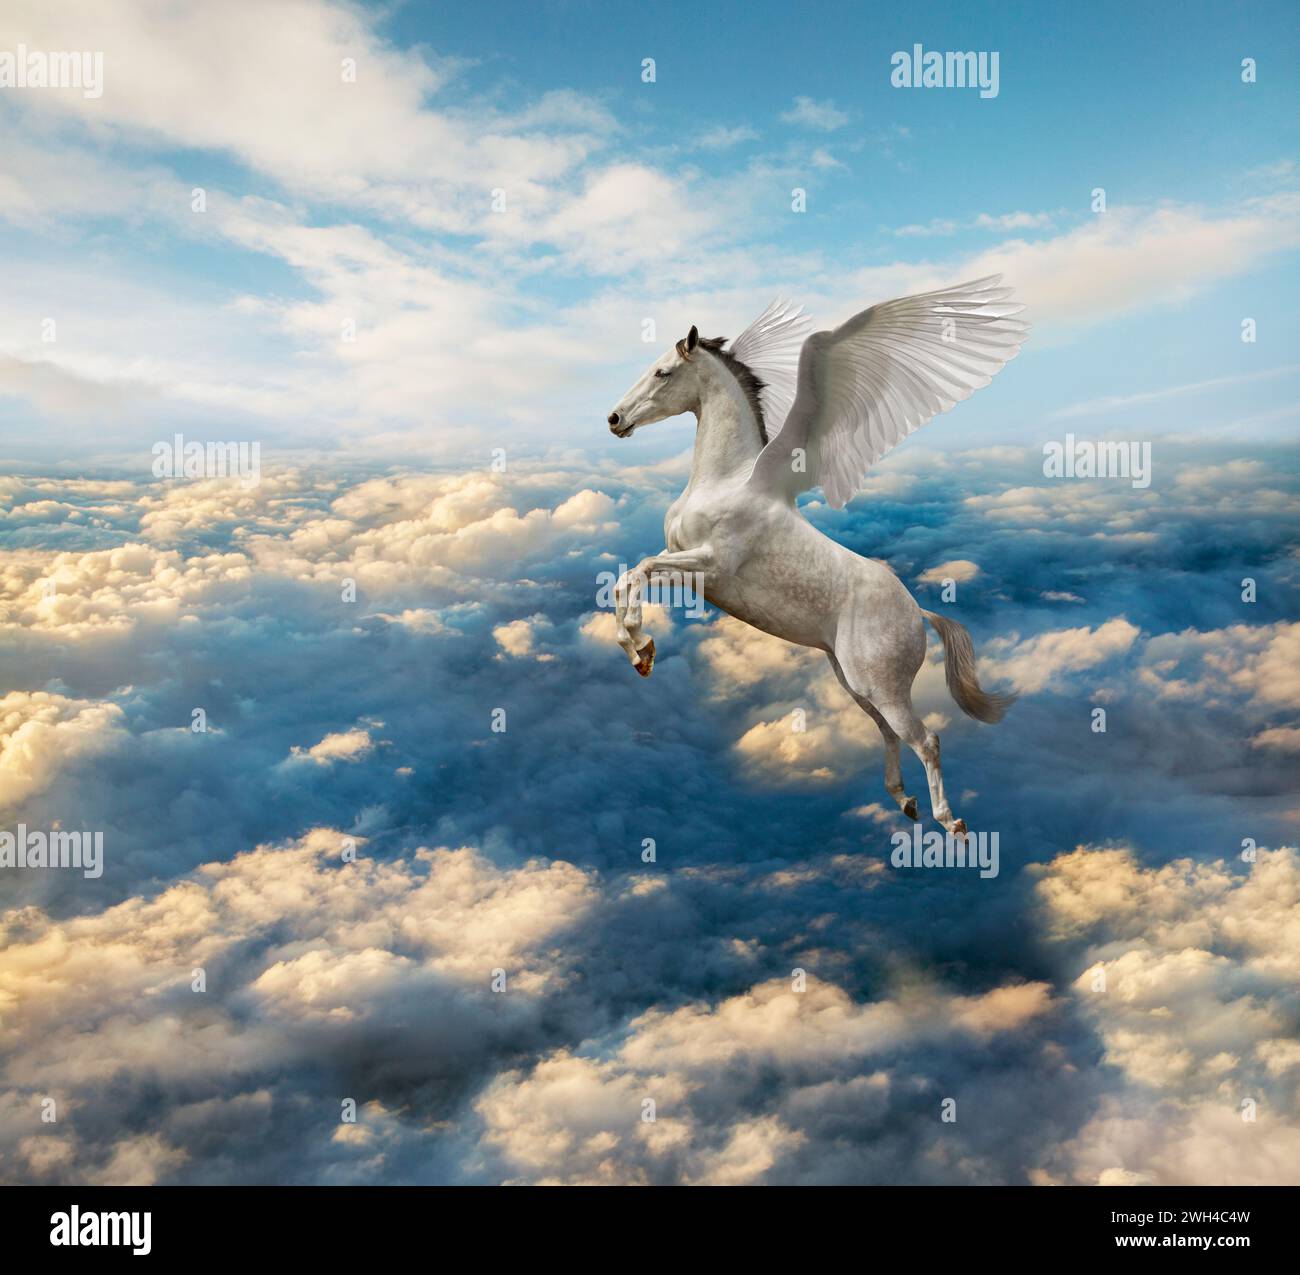 Un Pégase blanc mythologique s'élève au-dessus d'un paysage de nuages dramatique sur des ailes puissantes dans une image de puissance, de liberté, de possibilité et de pureté. Banque D'Images